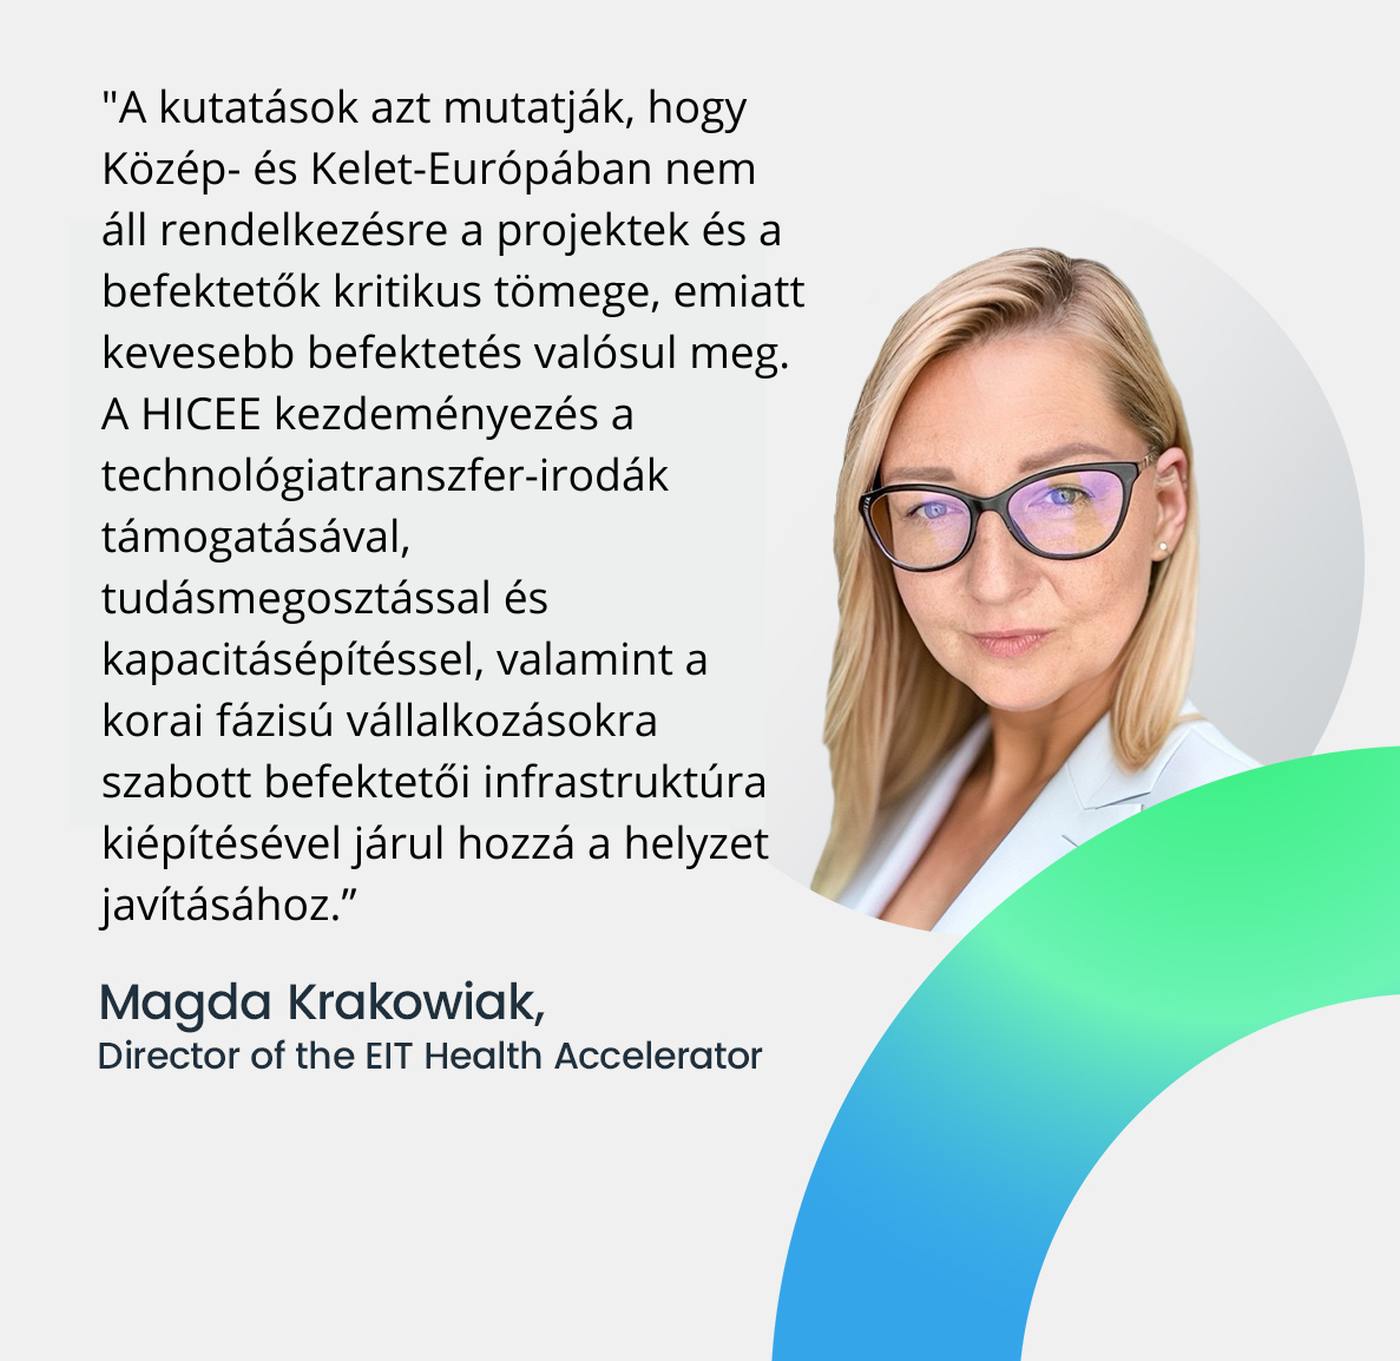 Magda Krakowiak, az EIT Health Accelerator igazgatója, forrás: EIT Health Accelerator 